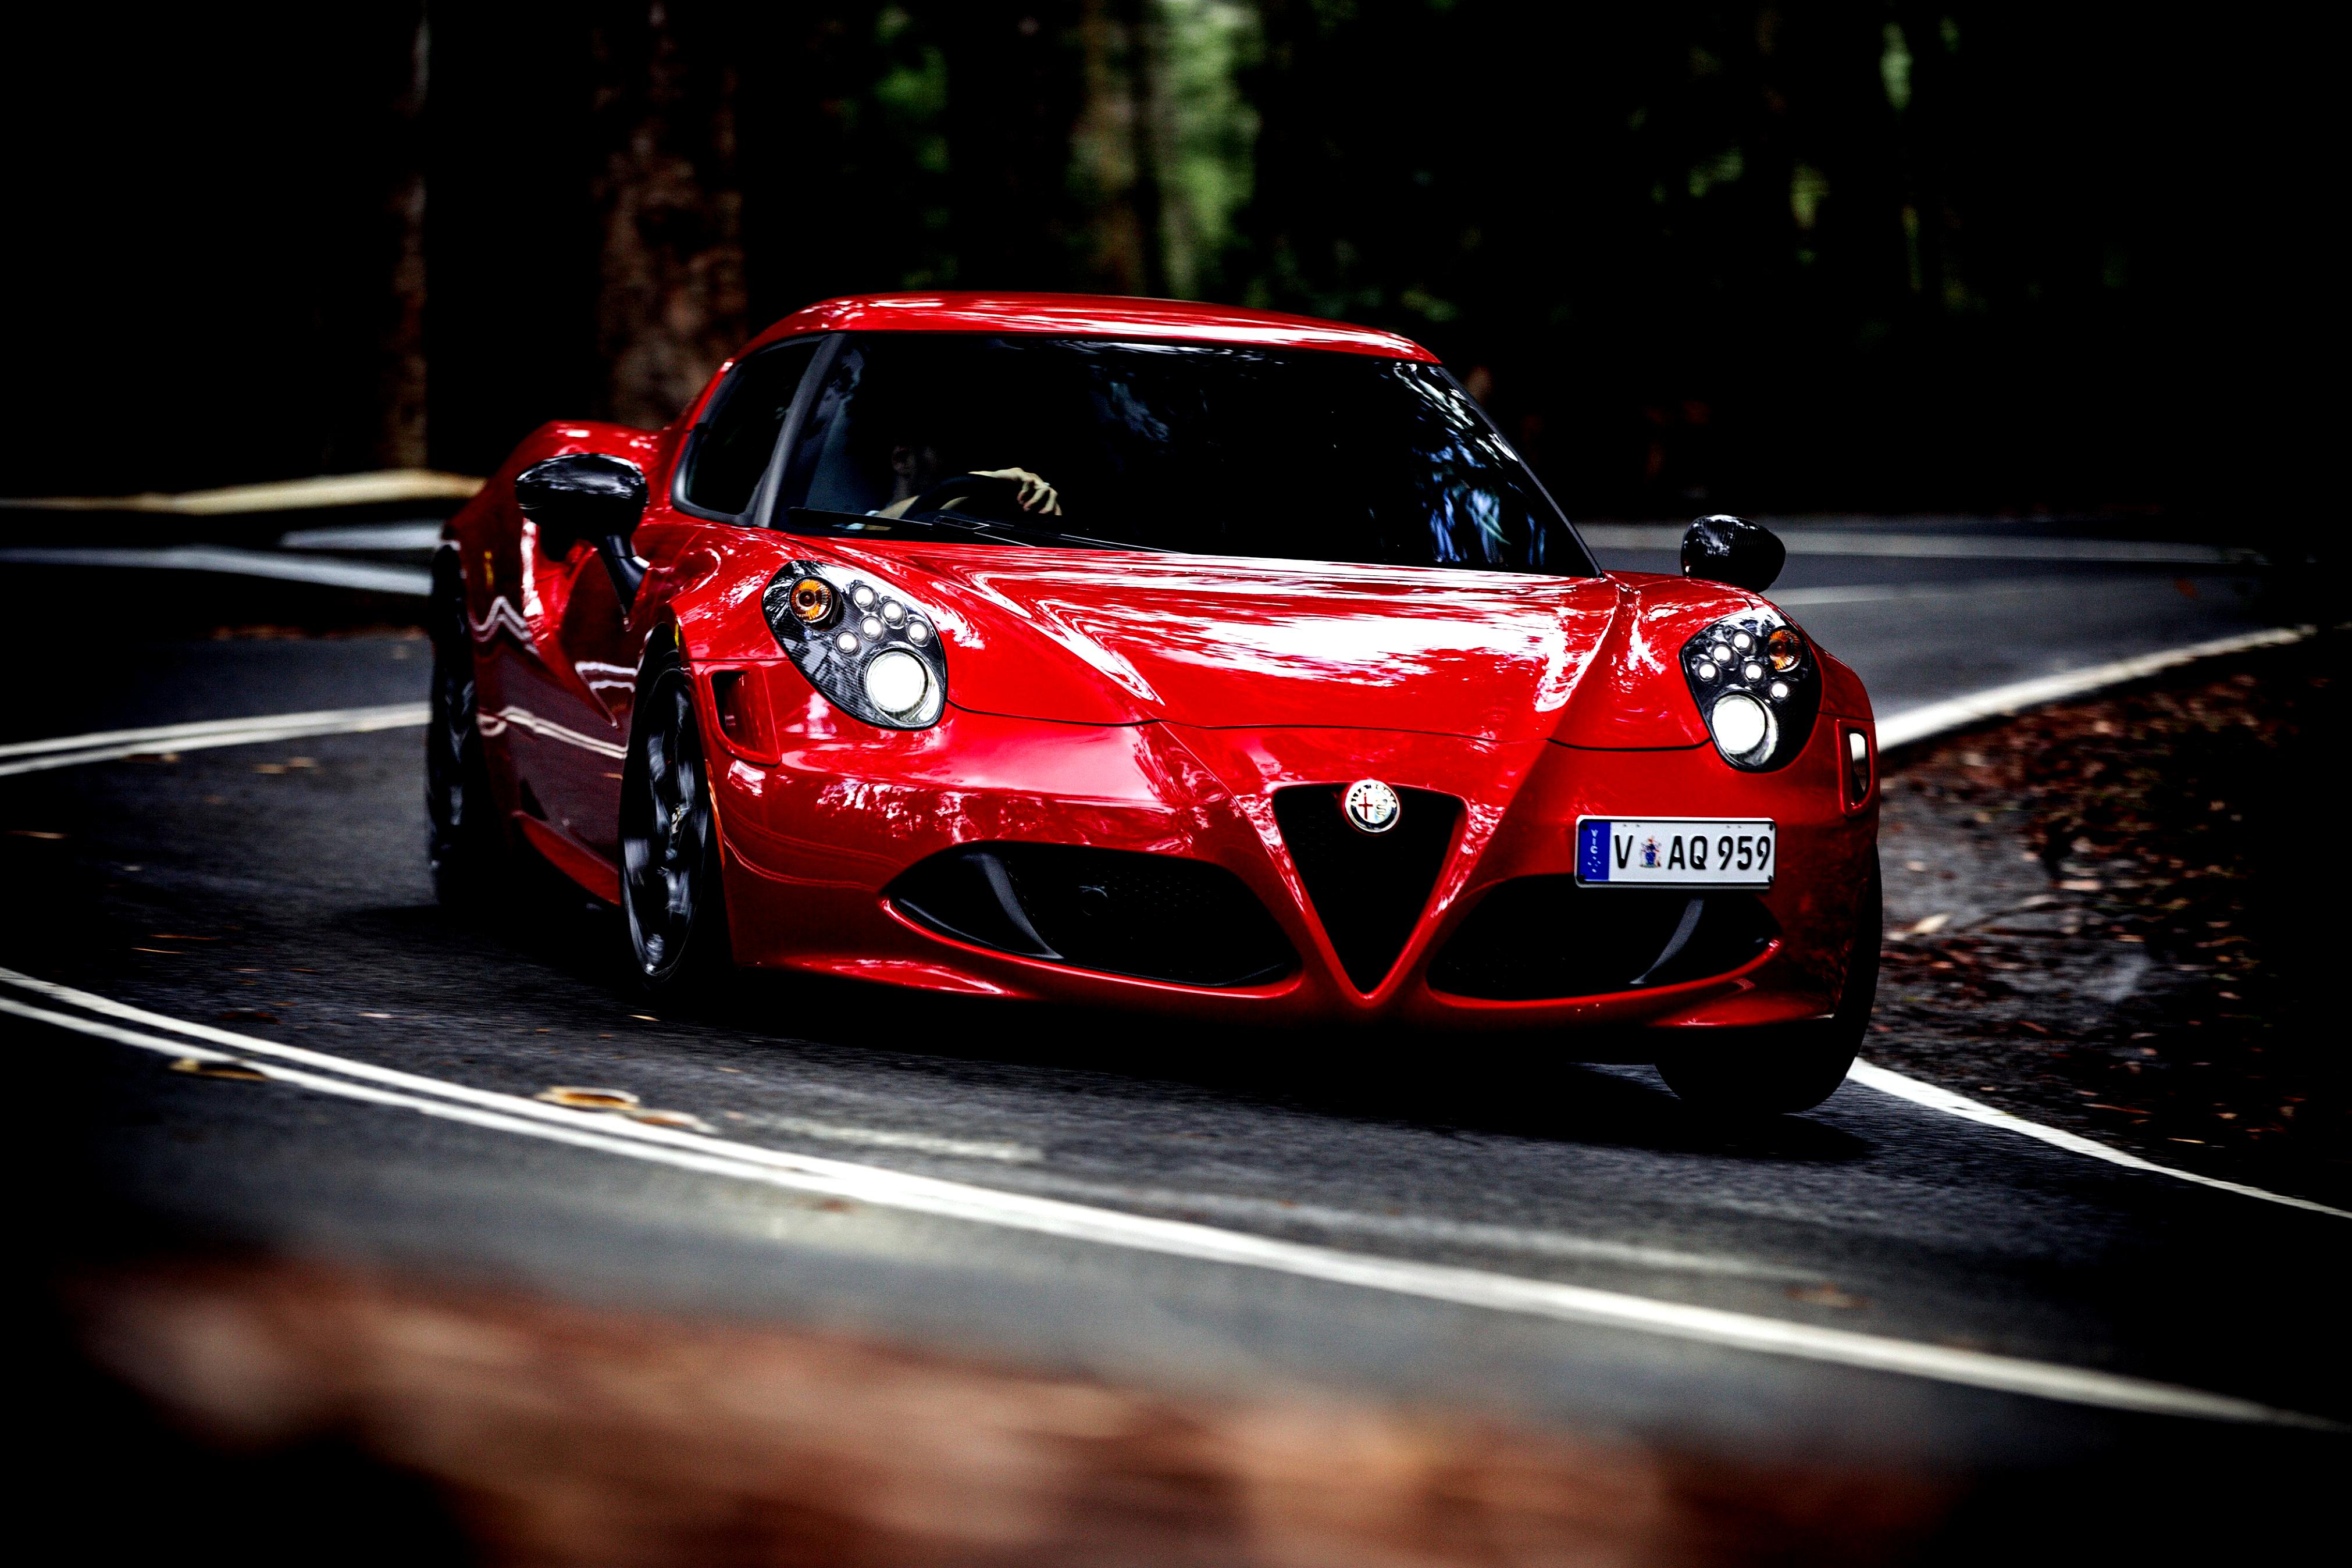 Alfa Romeo 4C 2013 #44